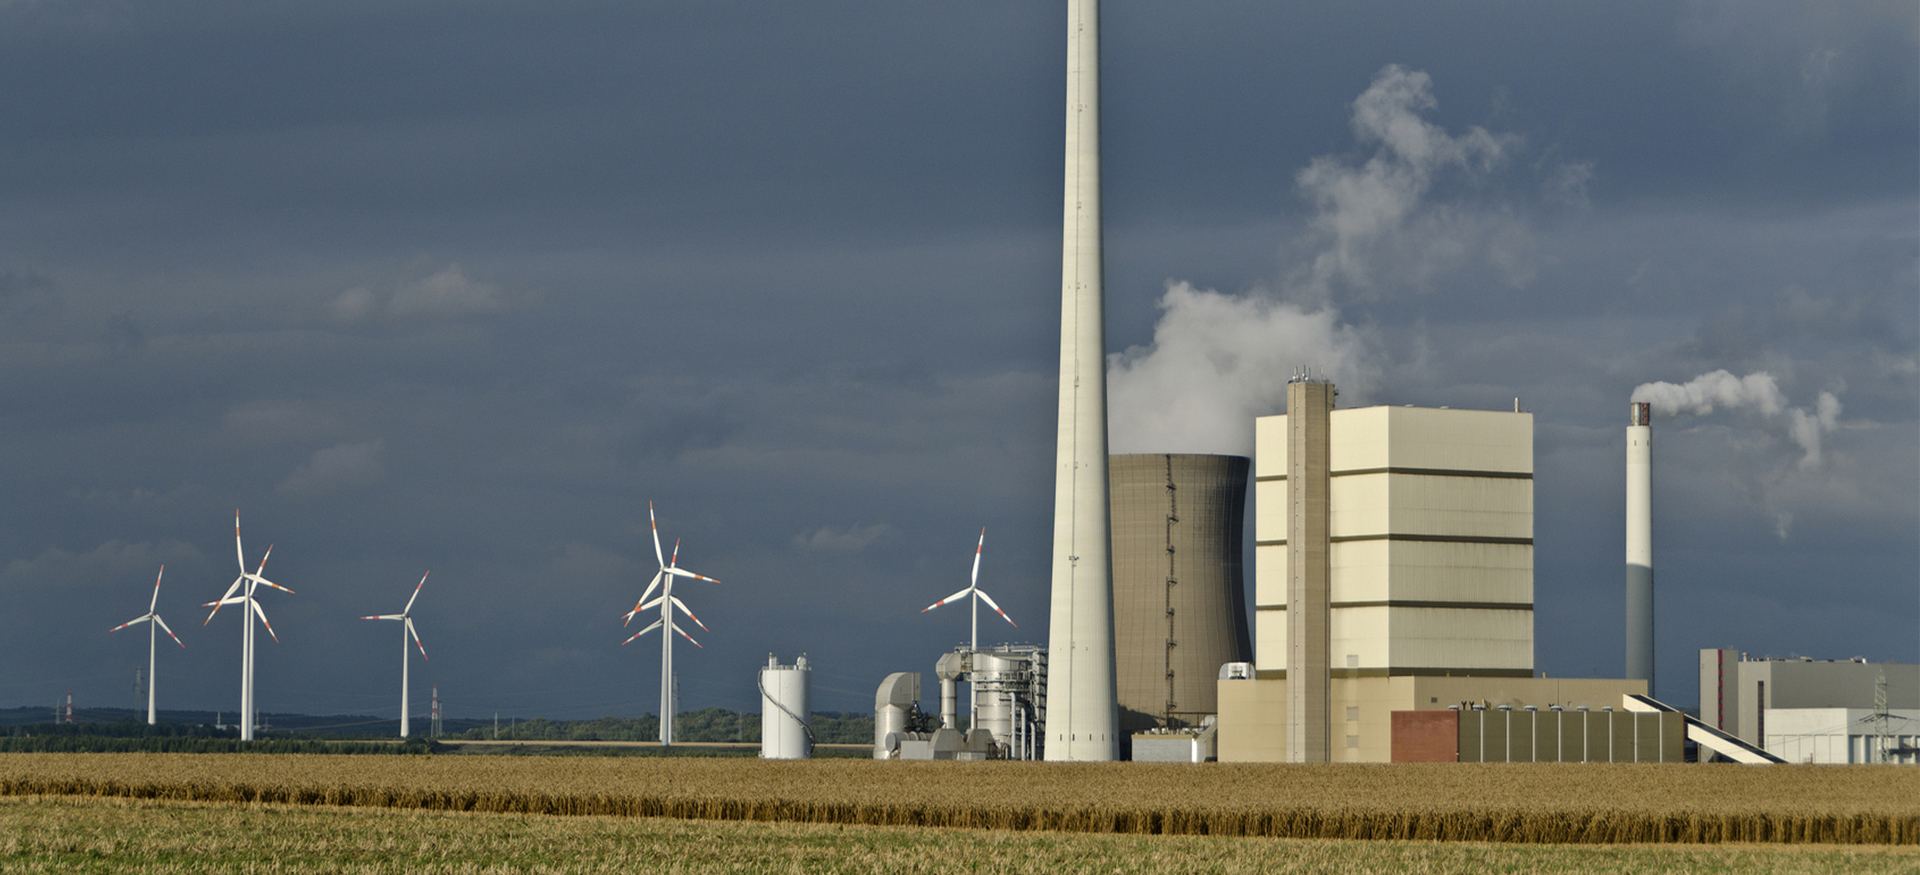 Kraftwerk mit rauchenden Schornsteinen und Windkraftanlagen vor dunkelgrauem Himmel auf einem Feld